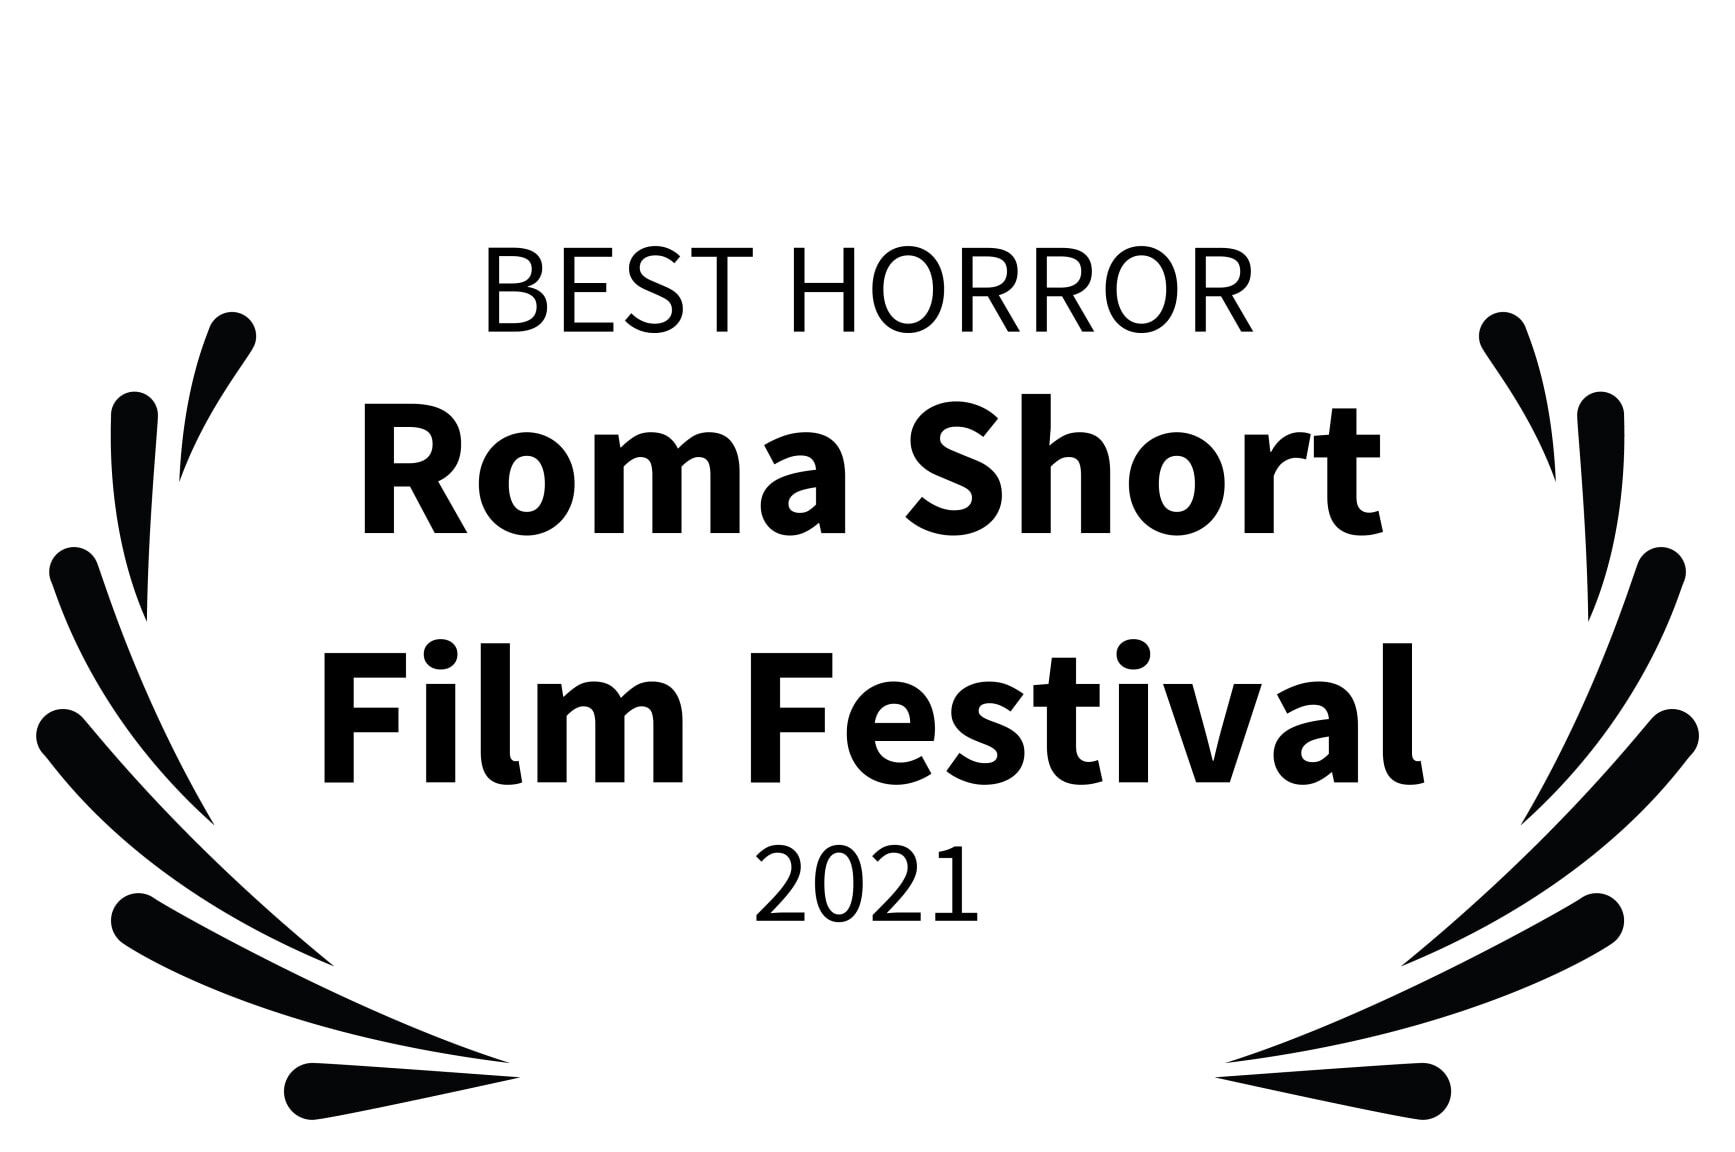 BEST HORROR - Roma Short Film Festival - 2021